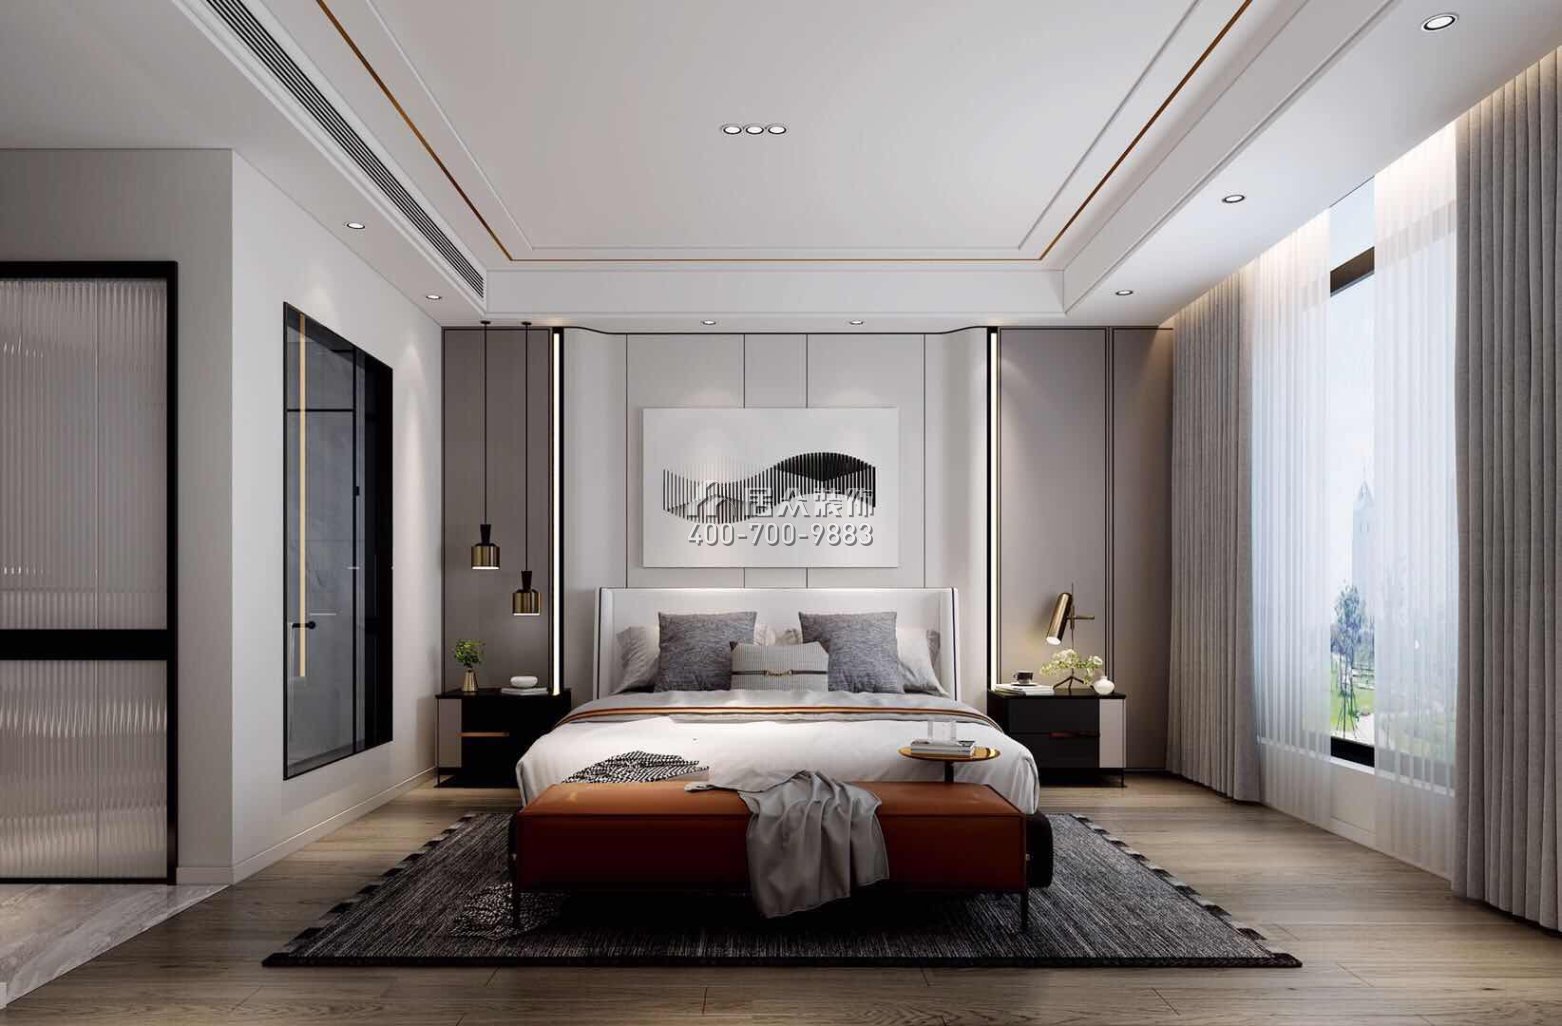 自建房300平方米現代簡約風格平層戶型臥室裝修效果圖